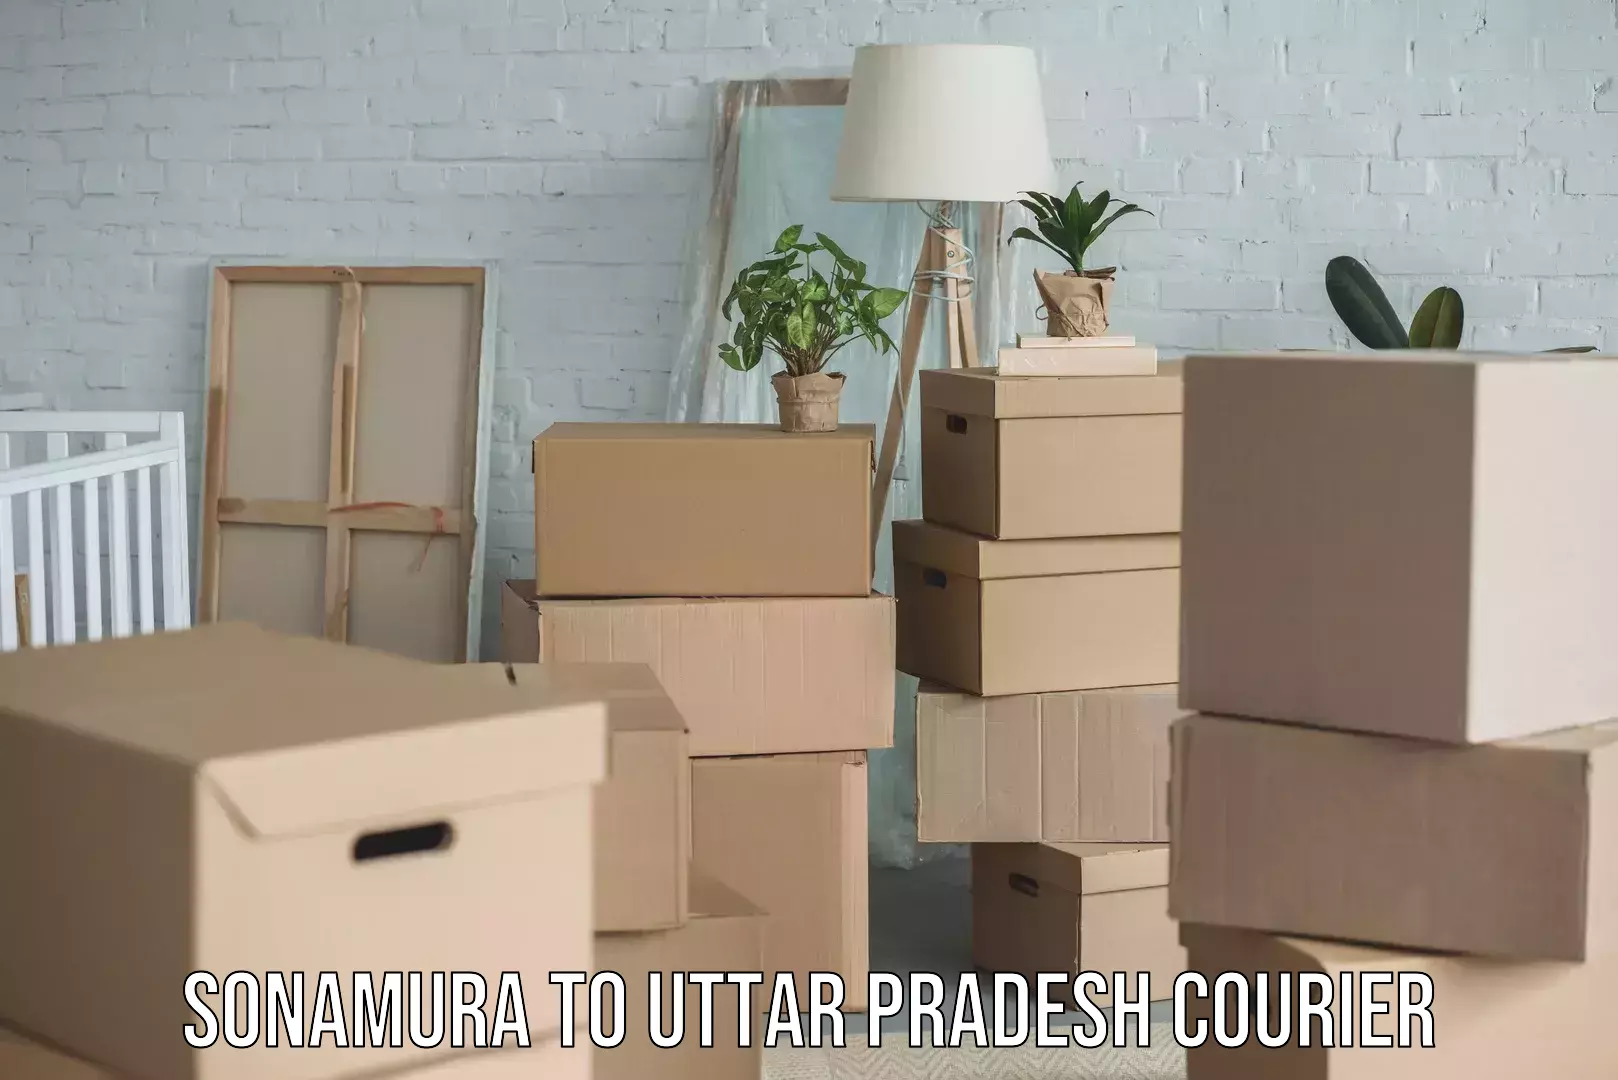 Small business couriers Sonamura to Uttar Pradesh